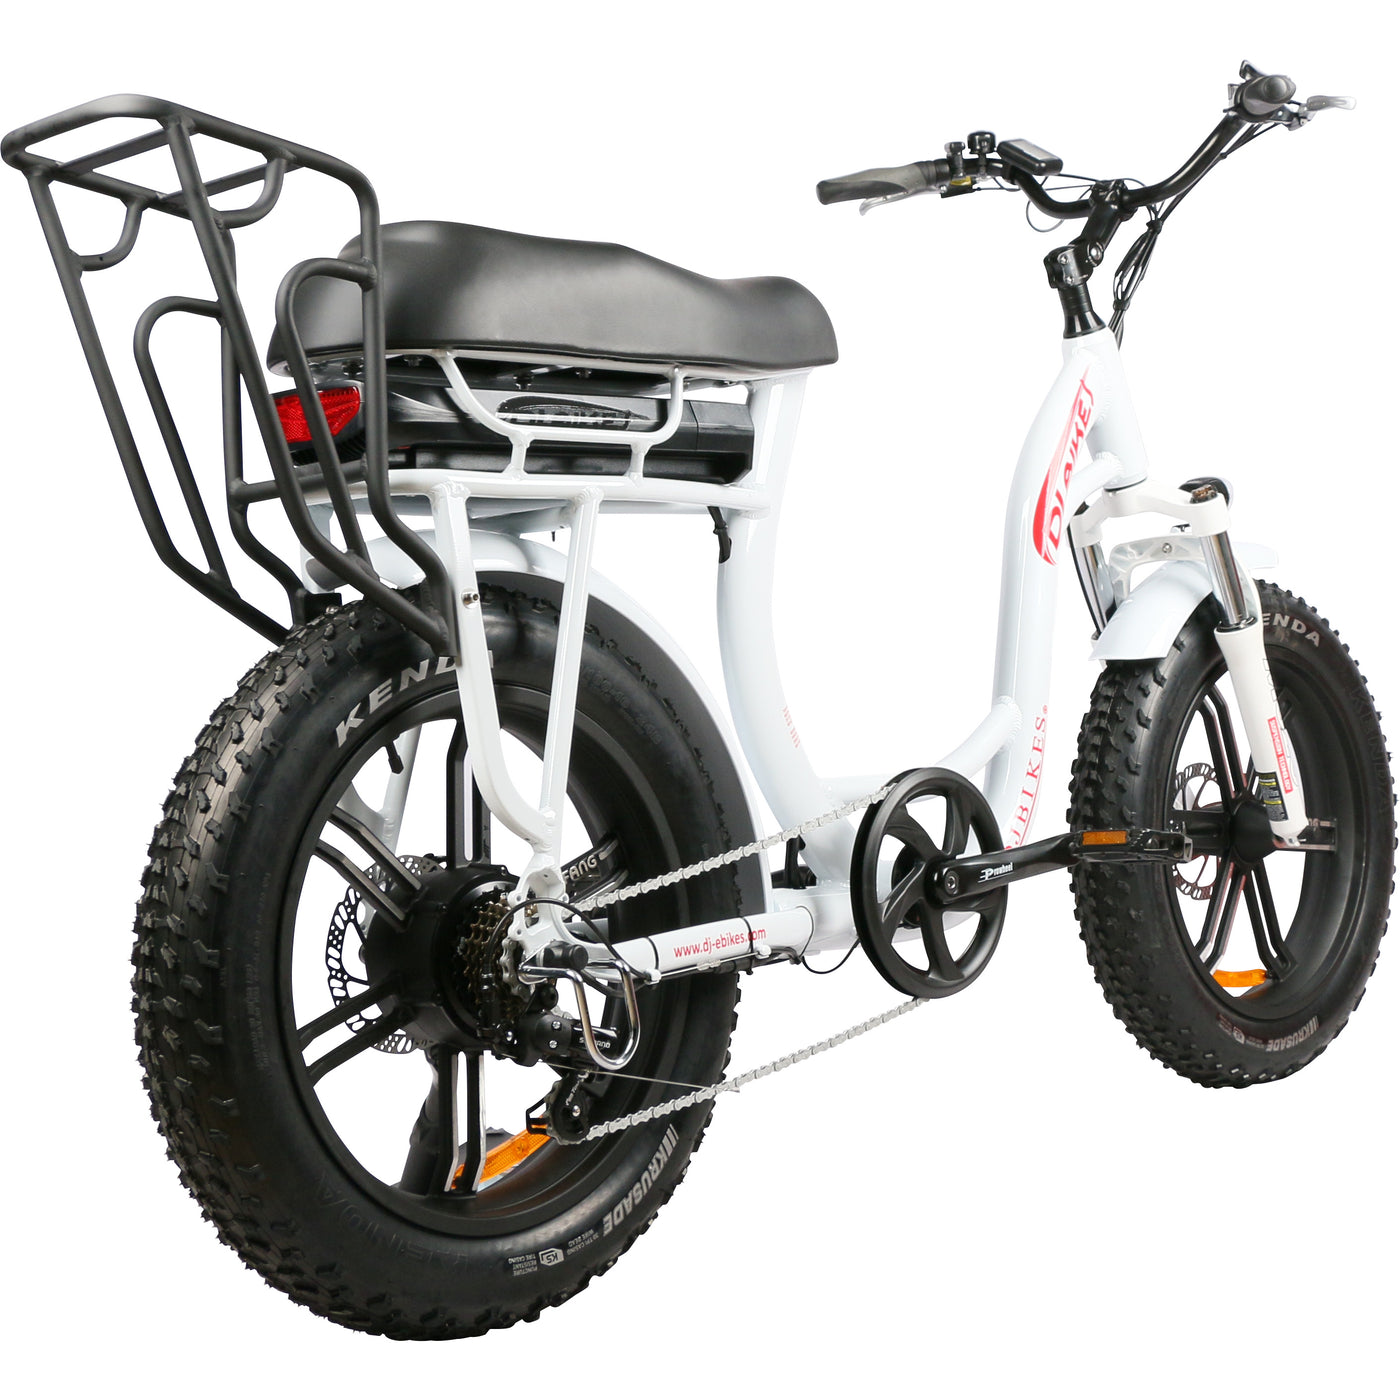 Electric Mini Bike, DJ Super Bike Step Thru, mini bike style step thru ebike with fat tires and new rear rack